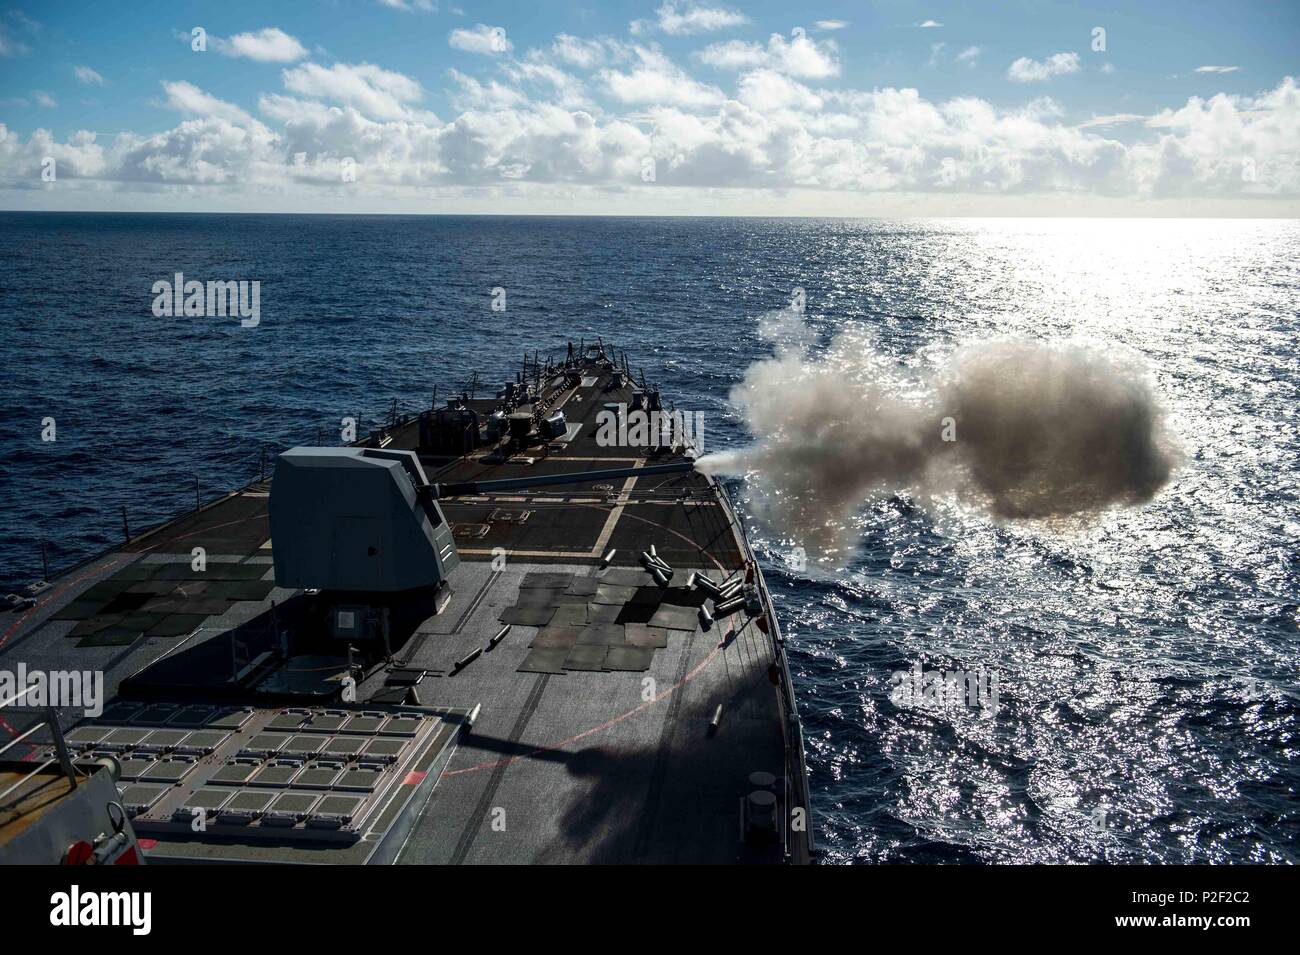 160905-N-NT265-017 Mare delle Filippine (sett. 5, 2016) Il distribuita Arleigh Burke-class guidato-missile destroyer USS McCampbell (DDG 85) incendi i suoi 5 pollici pistola durante un live-fire esercitazione. McCampbell è di pattuglia con un Carrier Strike gruppo cinque (CSG 5) nel Mare delle Filippine il supporto di sicurezza e stabilità nella Indo-Asia-regione del Pacifico. (U.S. Foto di Marina di Massa Specialista comunicazione di seconda classe Senyk cristiana/rilasciato) Foto Stock